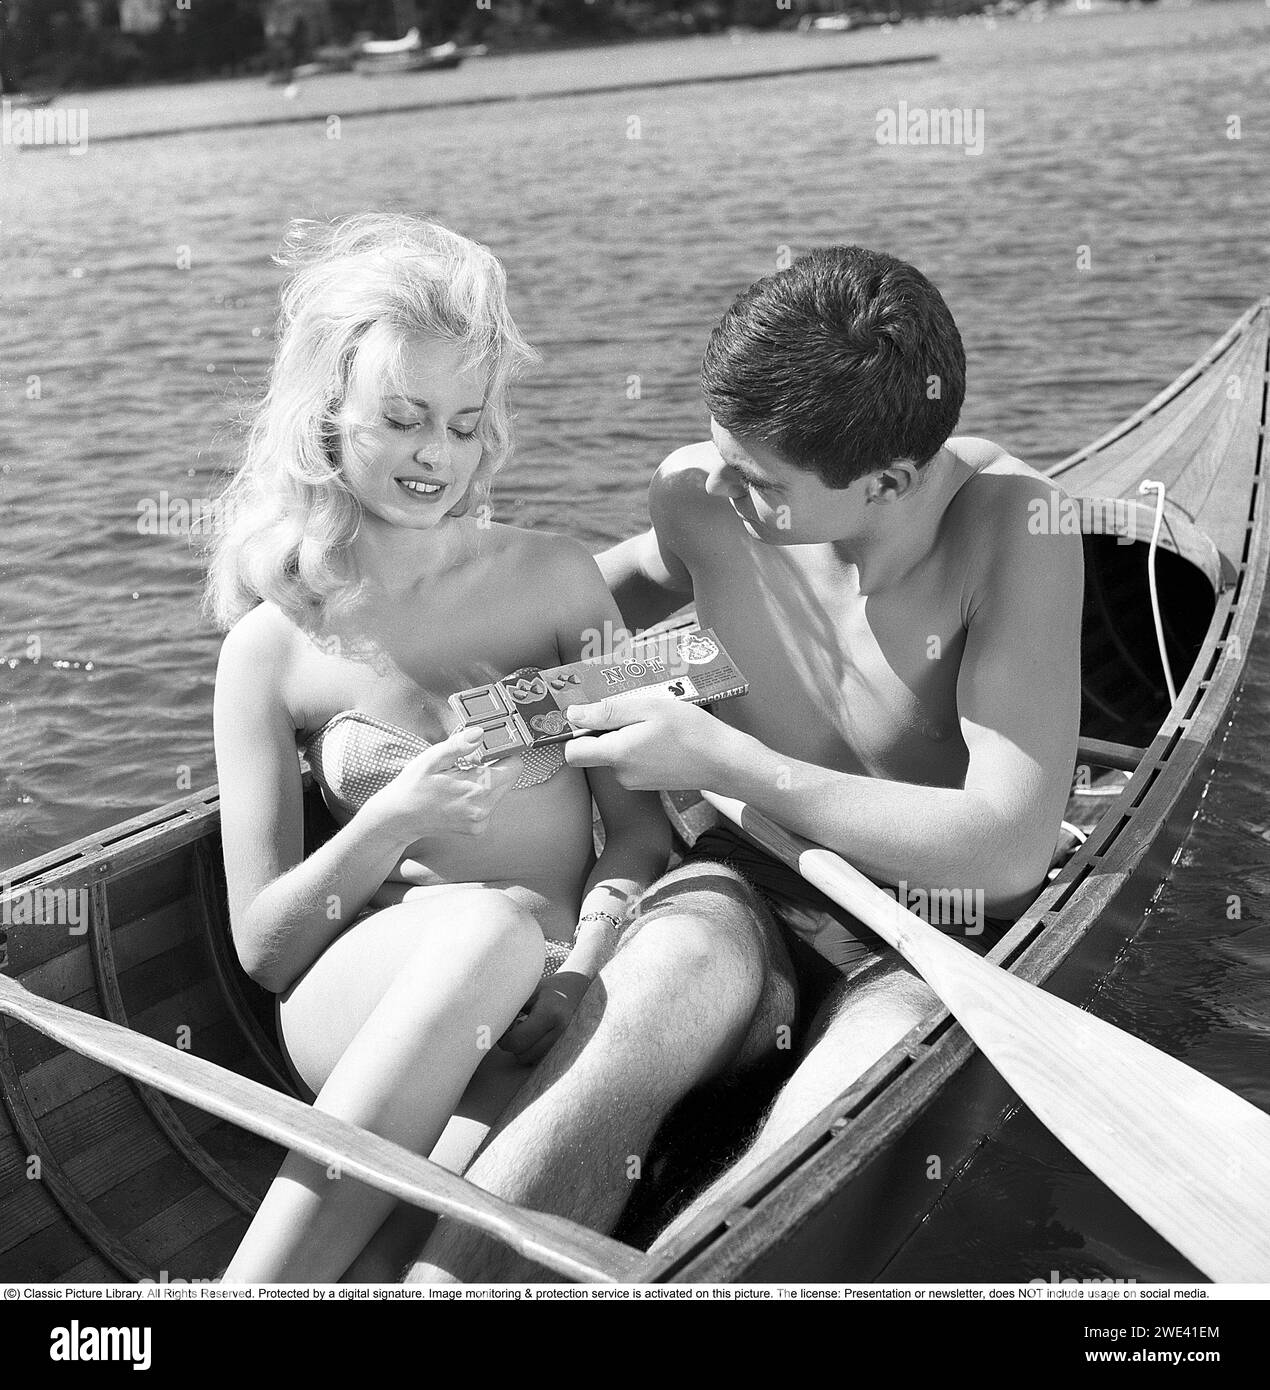 Mazetti Chocolate. Una giovane coppia siede insieme in canoa in una soleggiata giornata estiva e lui le offre il cioccolato dalla sua barretta di cioccolato. Svezia 1962. Kristoffersson rif. CZ54 Foto Stock